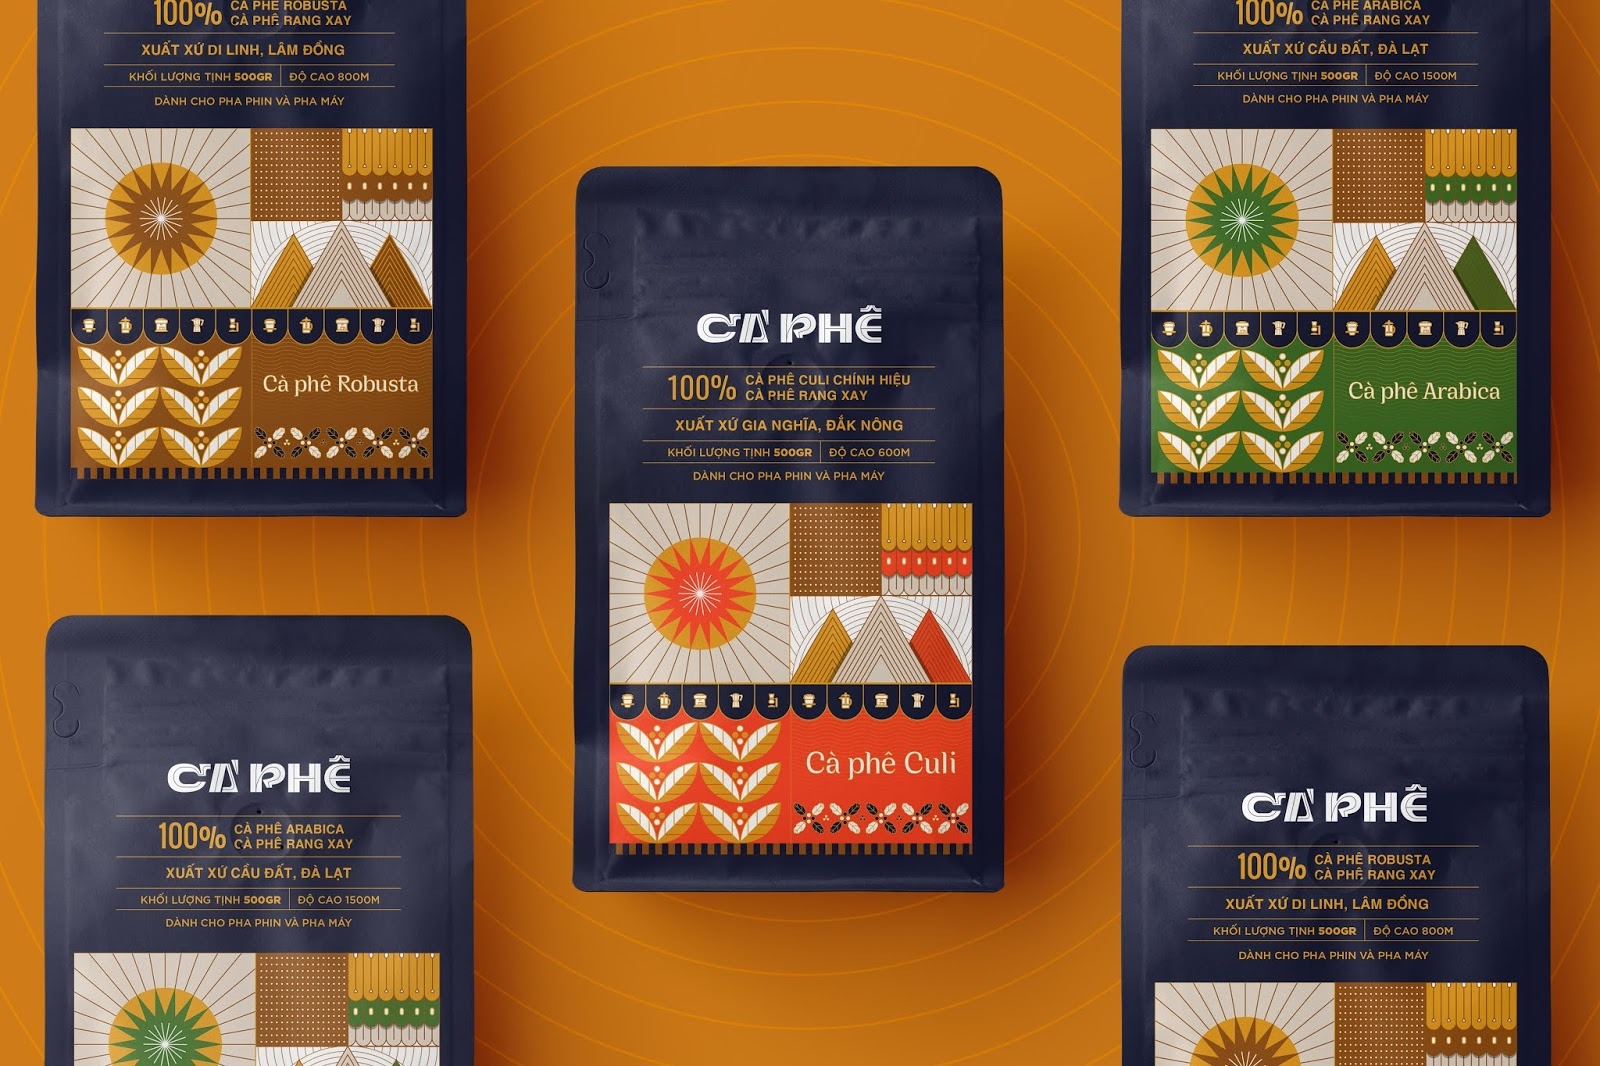 越南Ca Phea咖啡袋包装设计